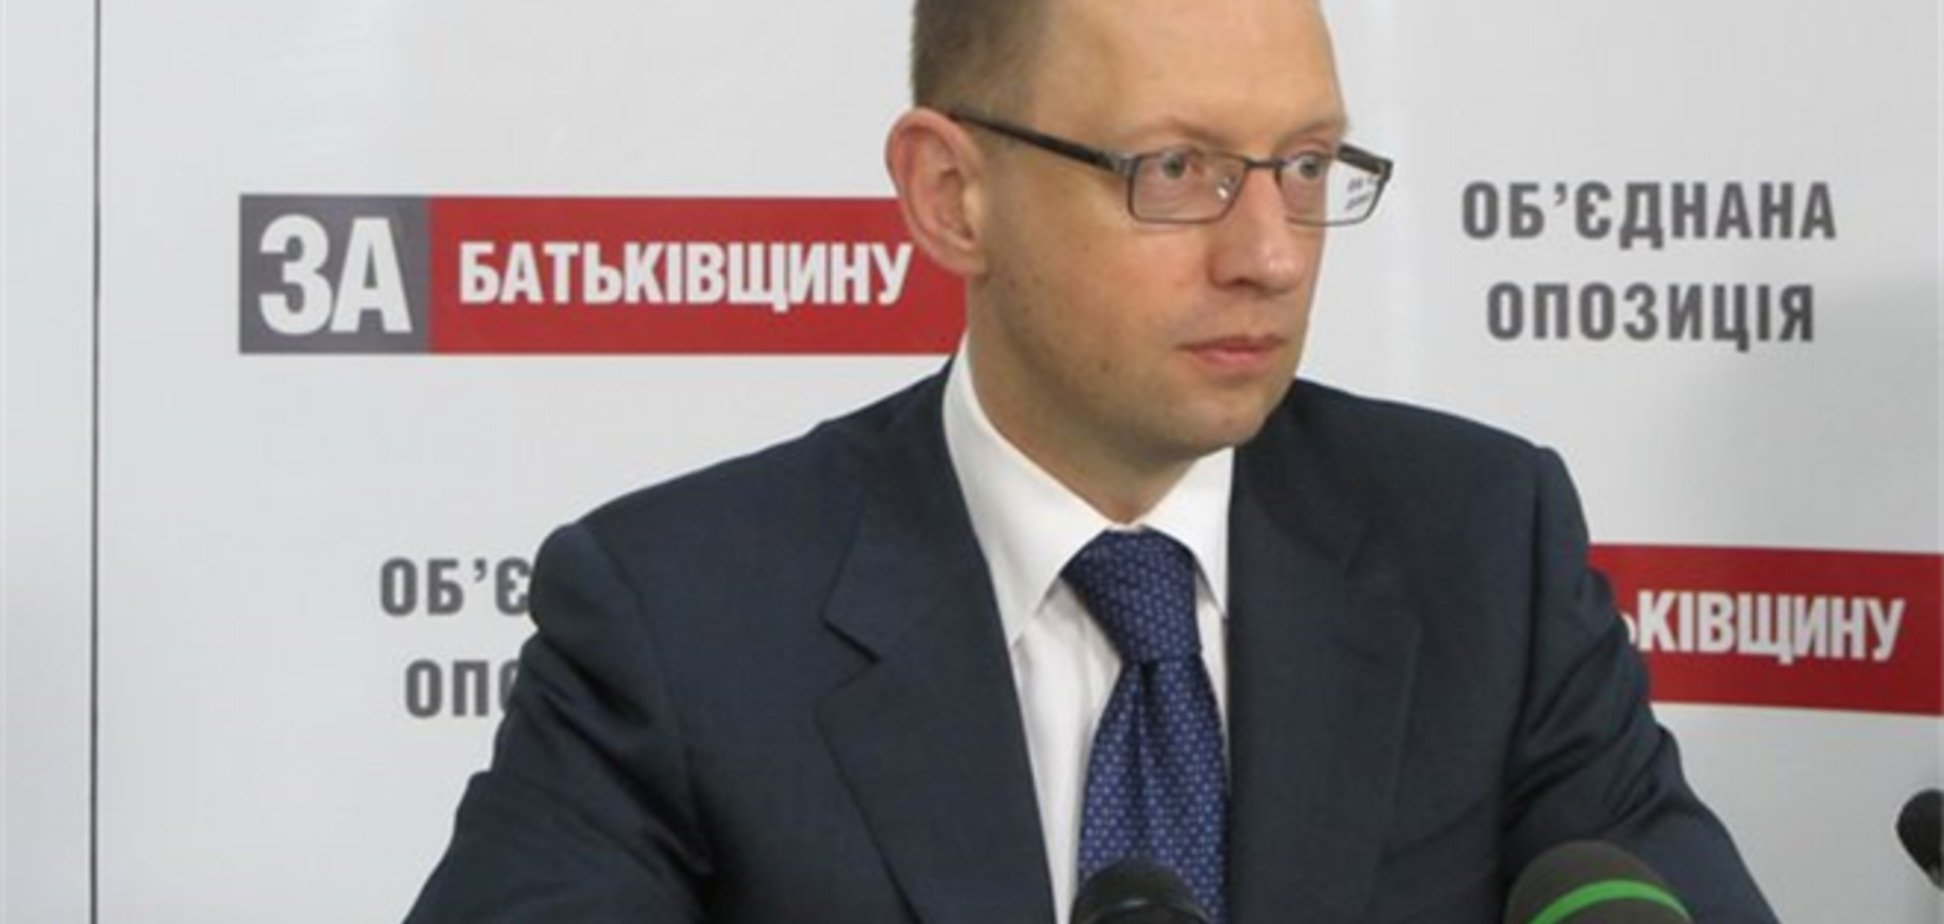 Четверть членов партии Яценюка вступили в «Батьківщину»